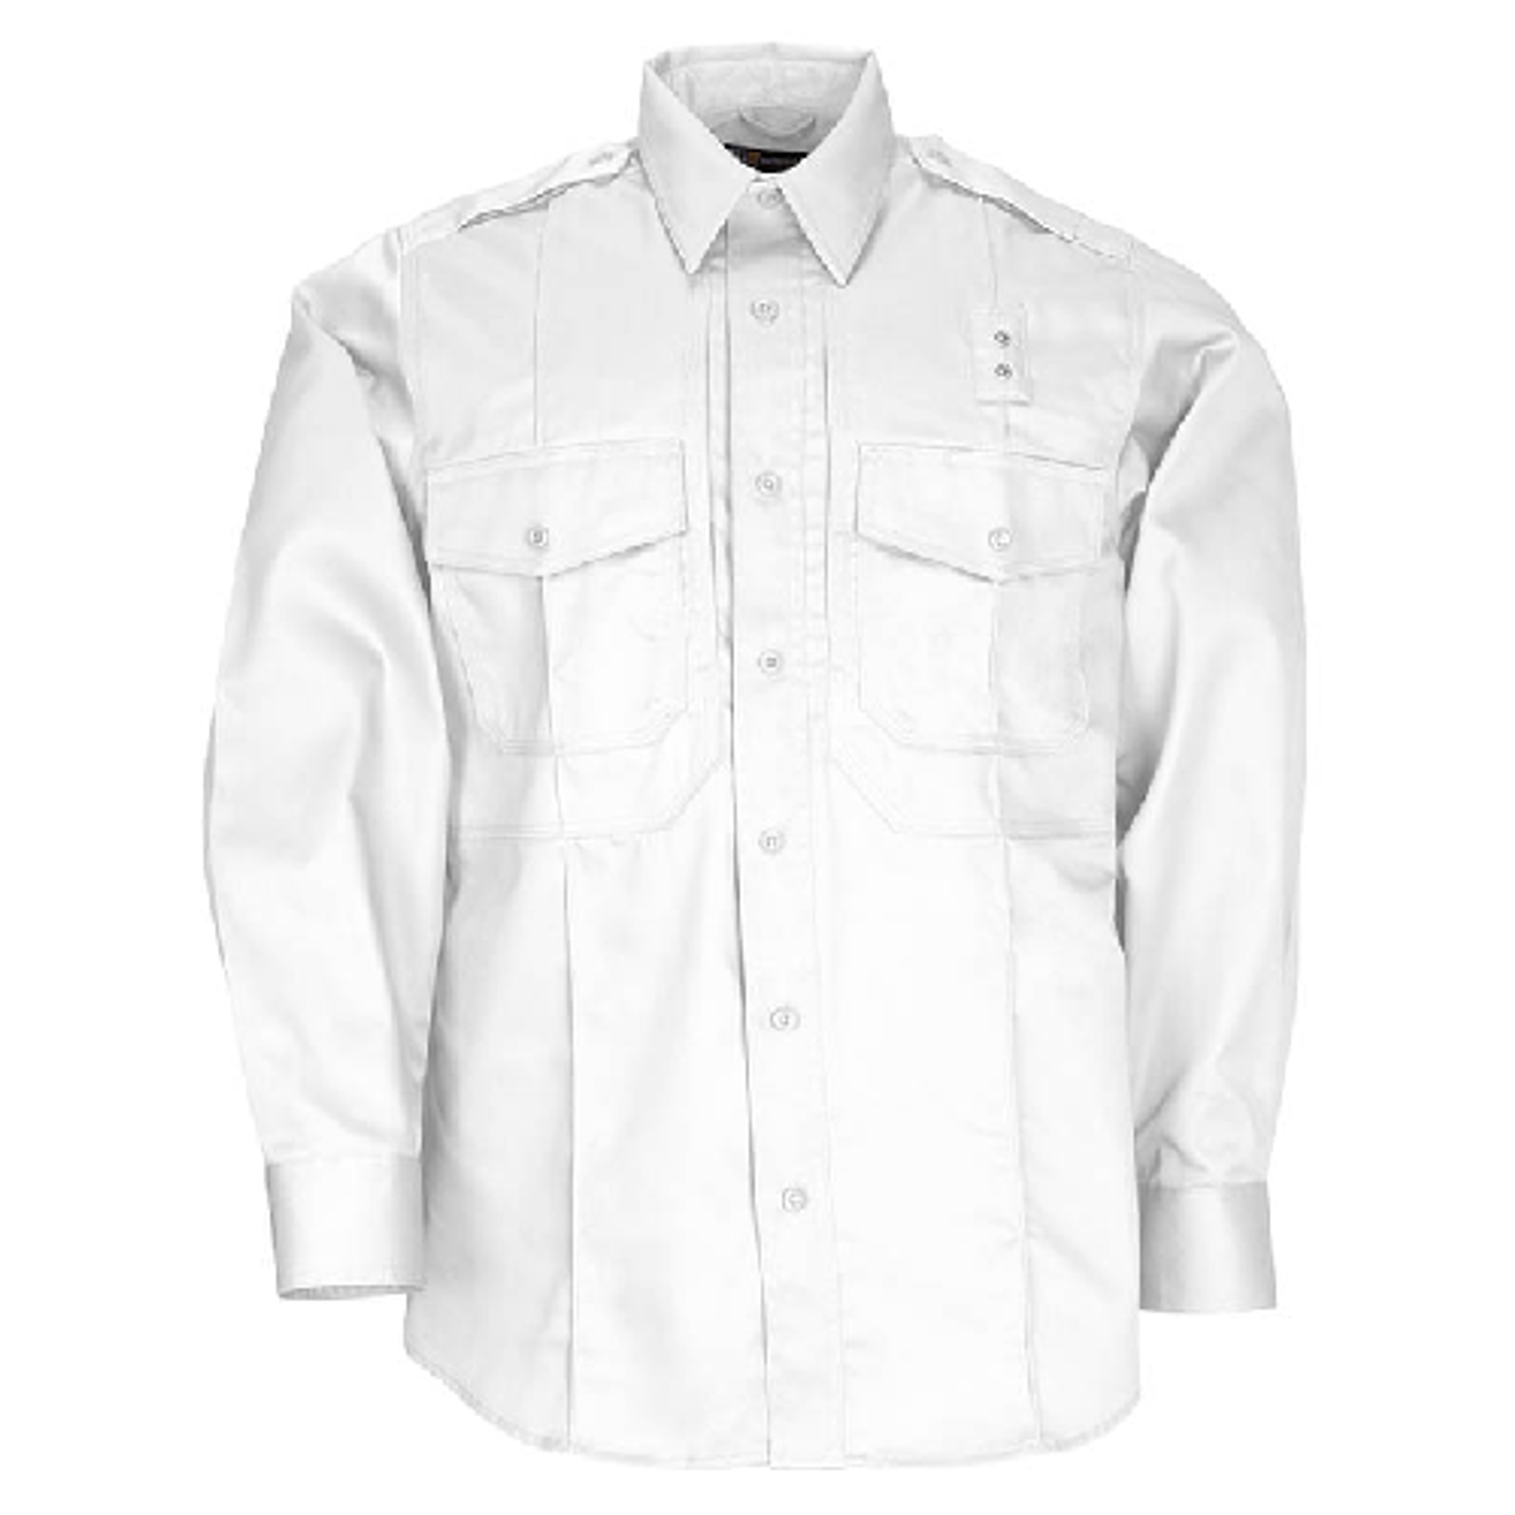 Class B Pdu Twill Shirt - KR5-72345010XLR